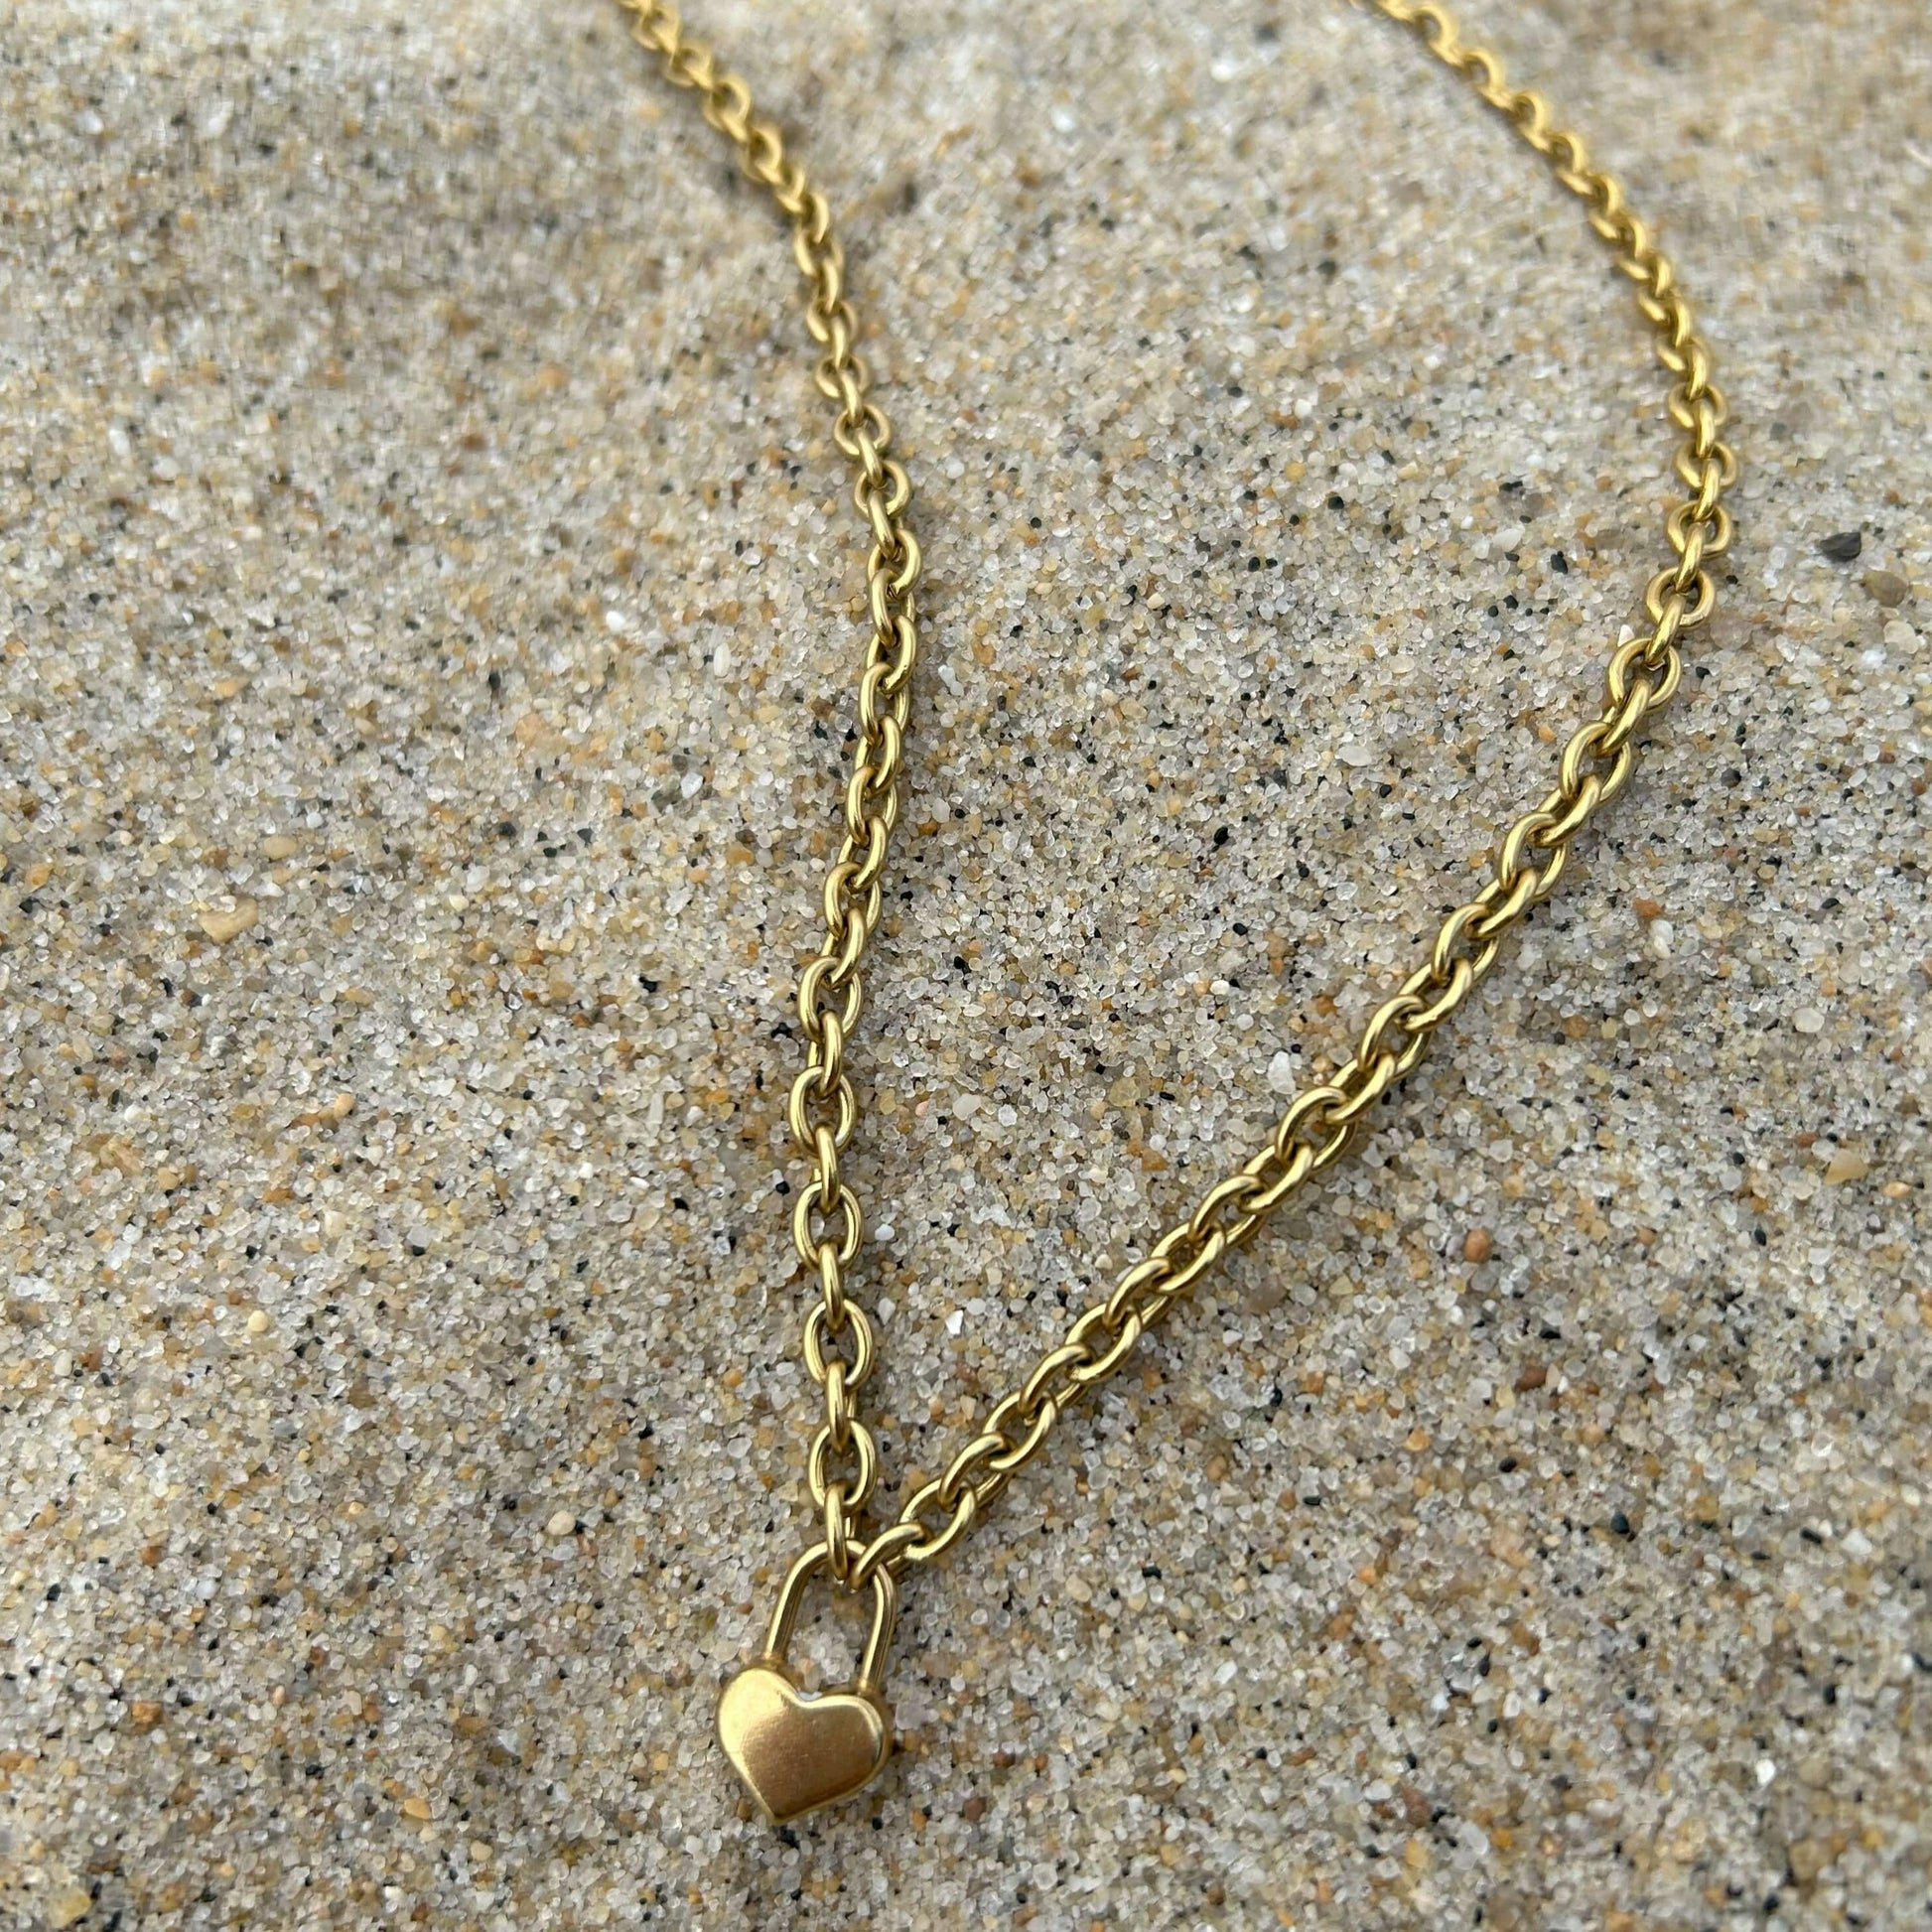 Dainty Gold Heart Lock Pendant Necklace For Women - Boutique Wear RENN